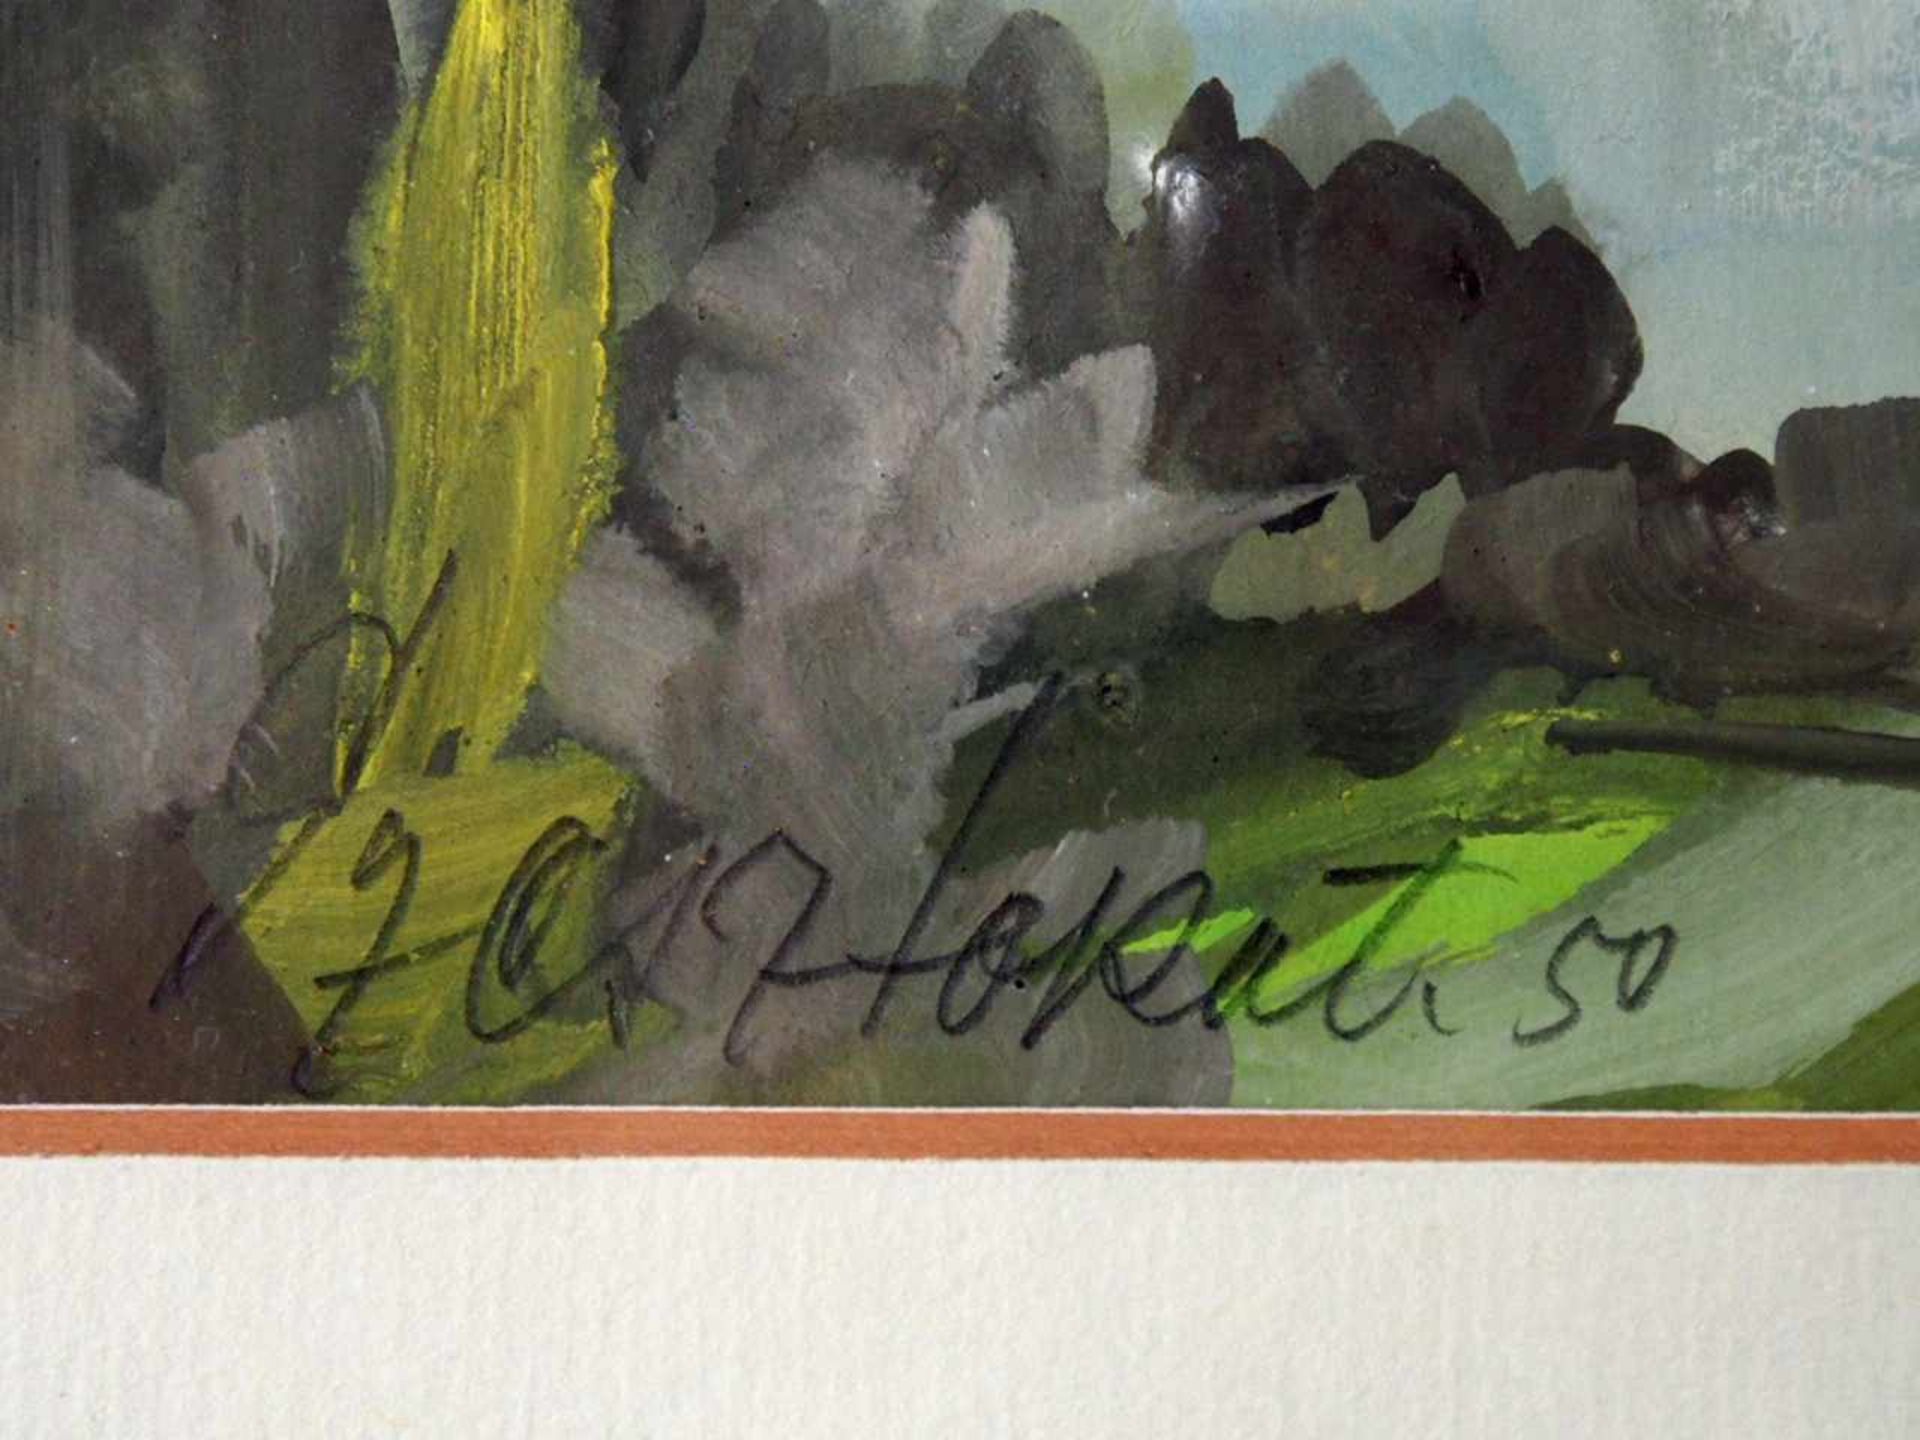 SZESZTOKAT, Willy1884-1963Ansicht auf den DrachenfelsGouache auf Papier, signiert und datiert (19)50 - Image 3 of 3